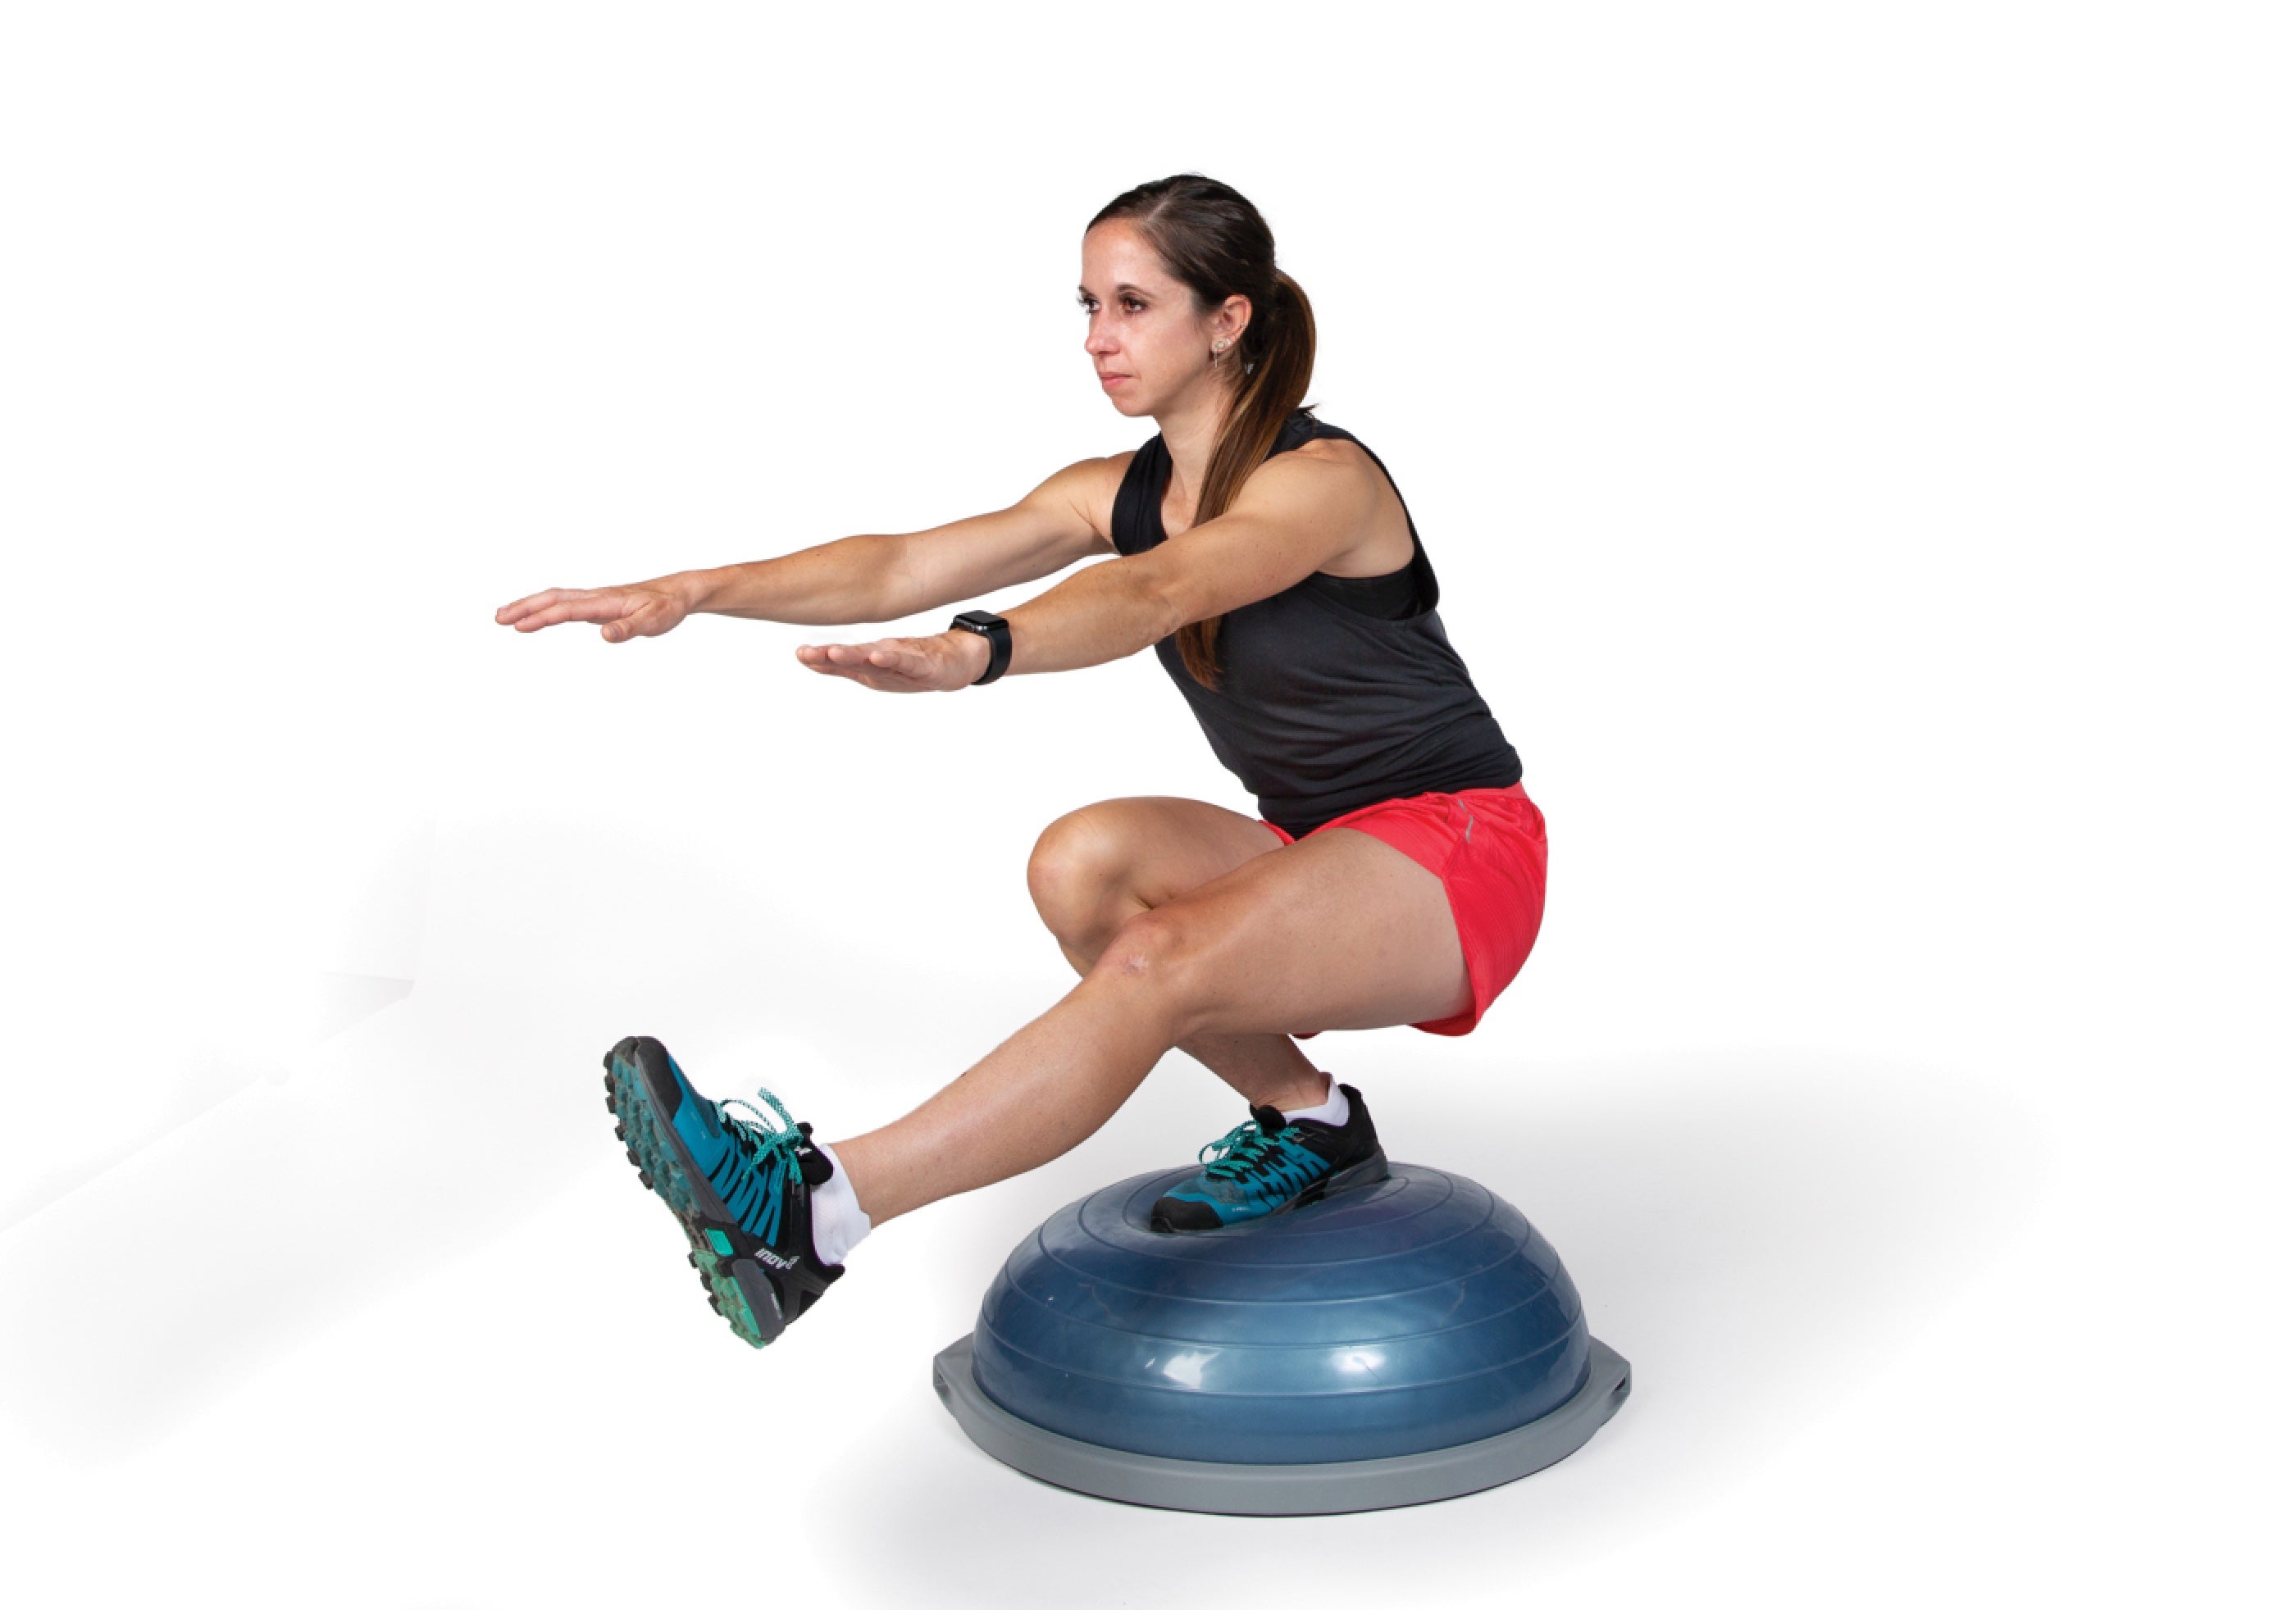 4 Leg Exercises for Better Balance - Oxygen Mag